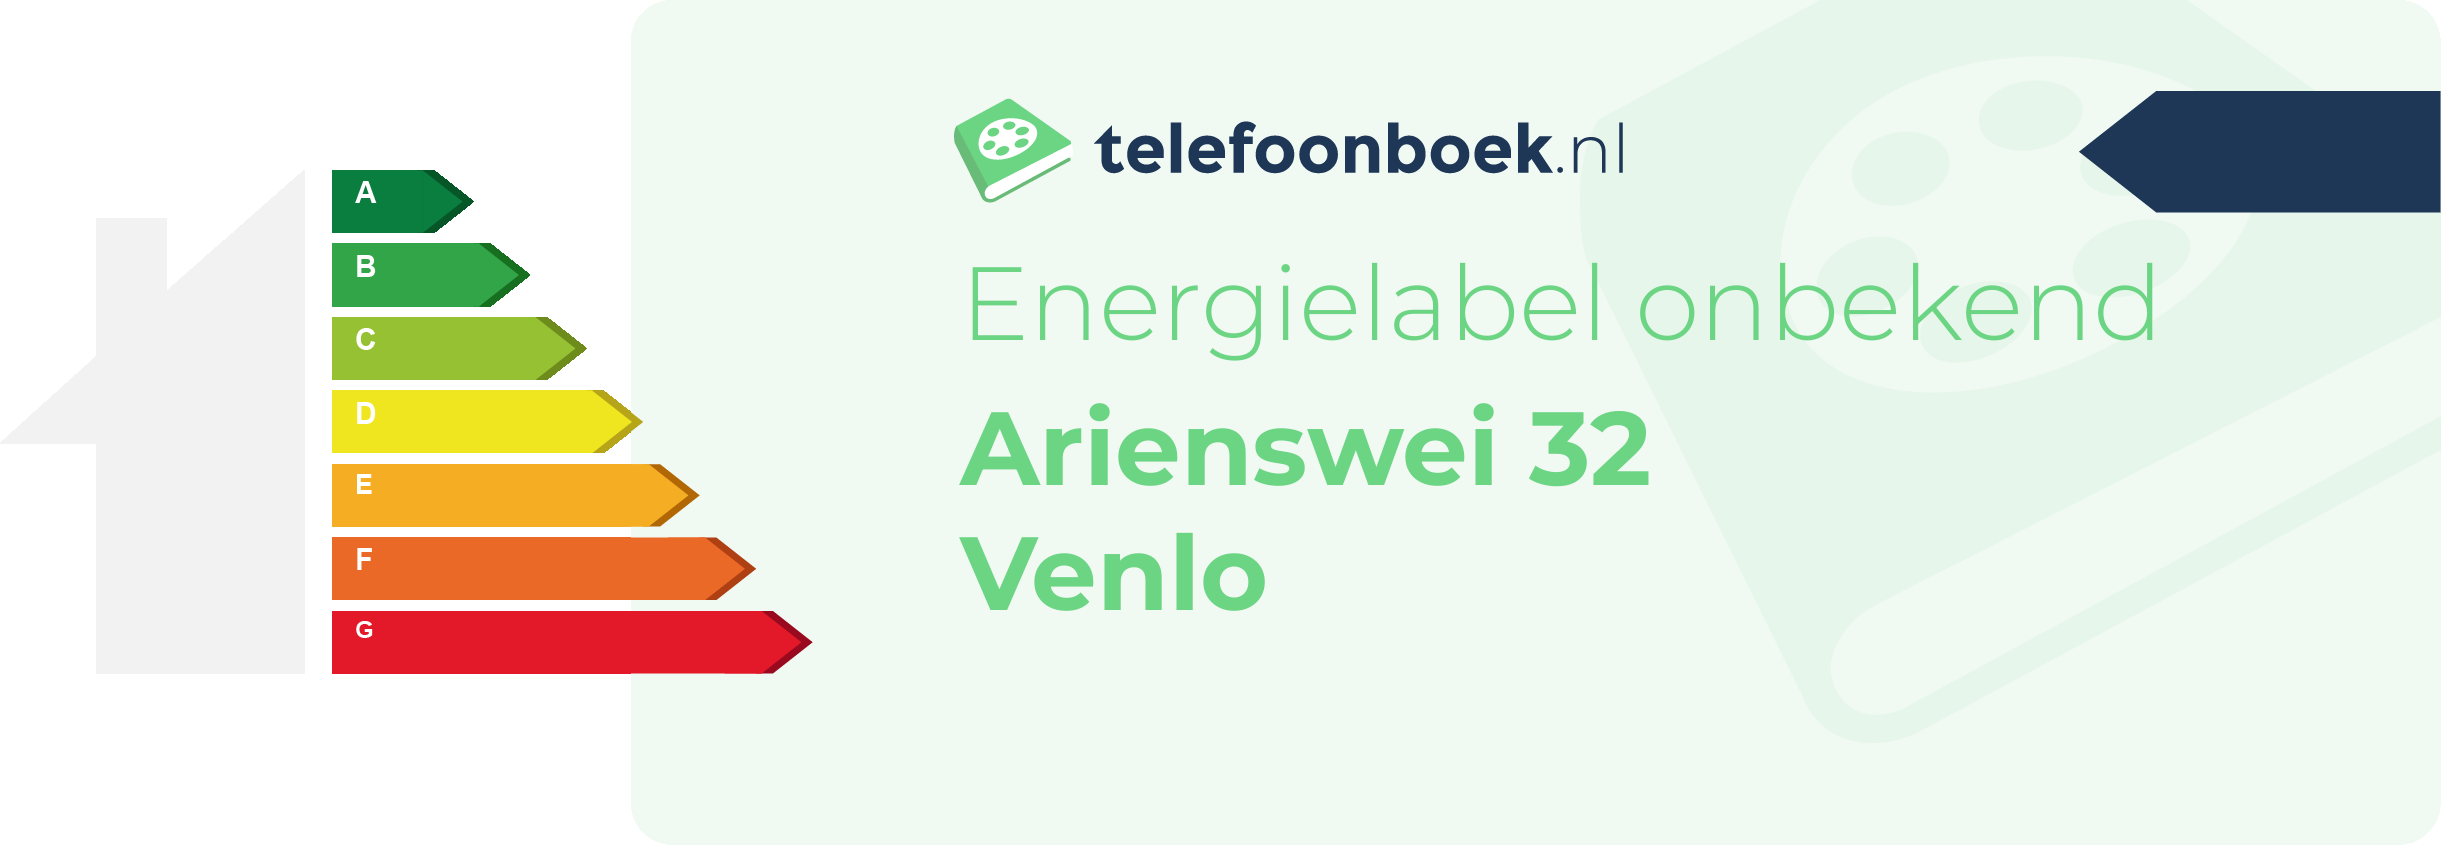 Energielabel Arienswei 32 Venlo